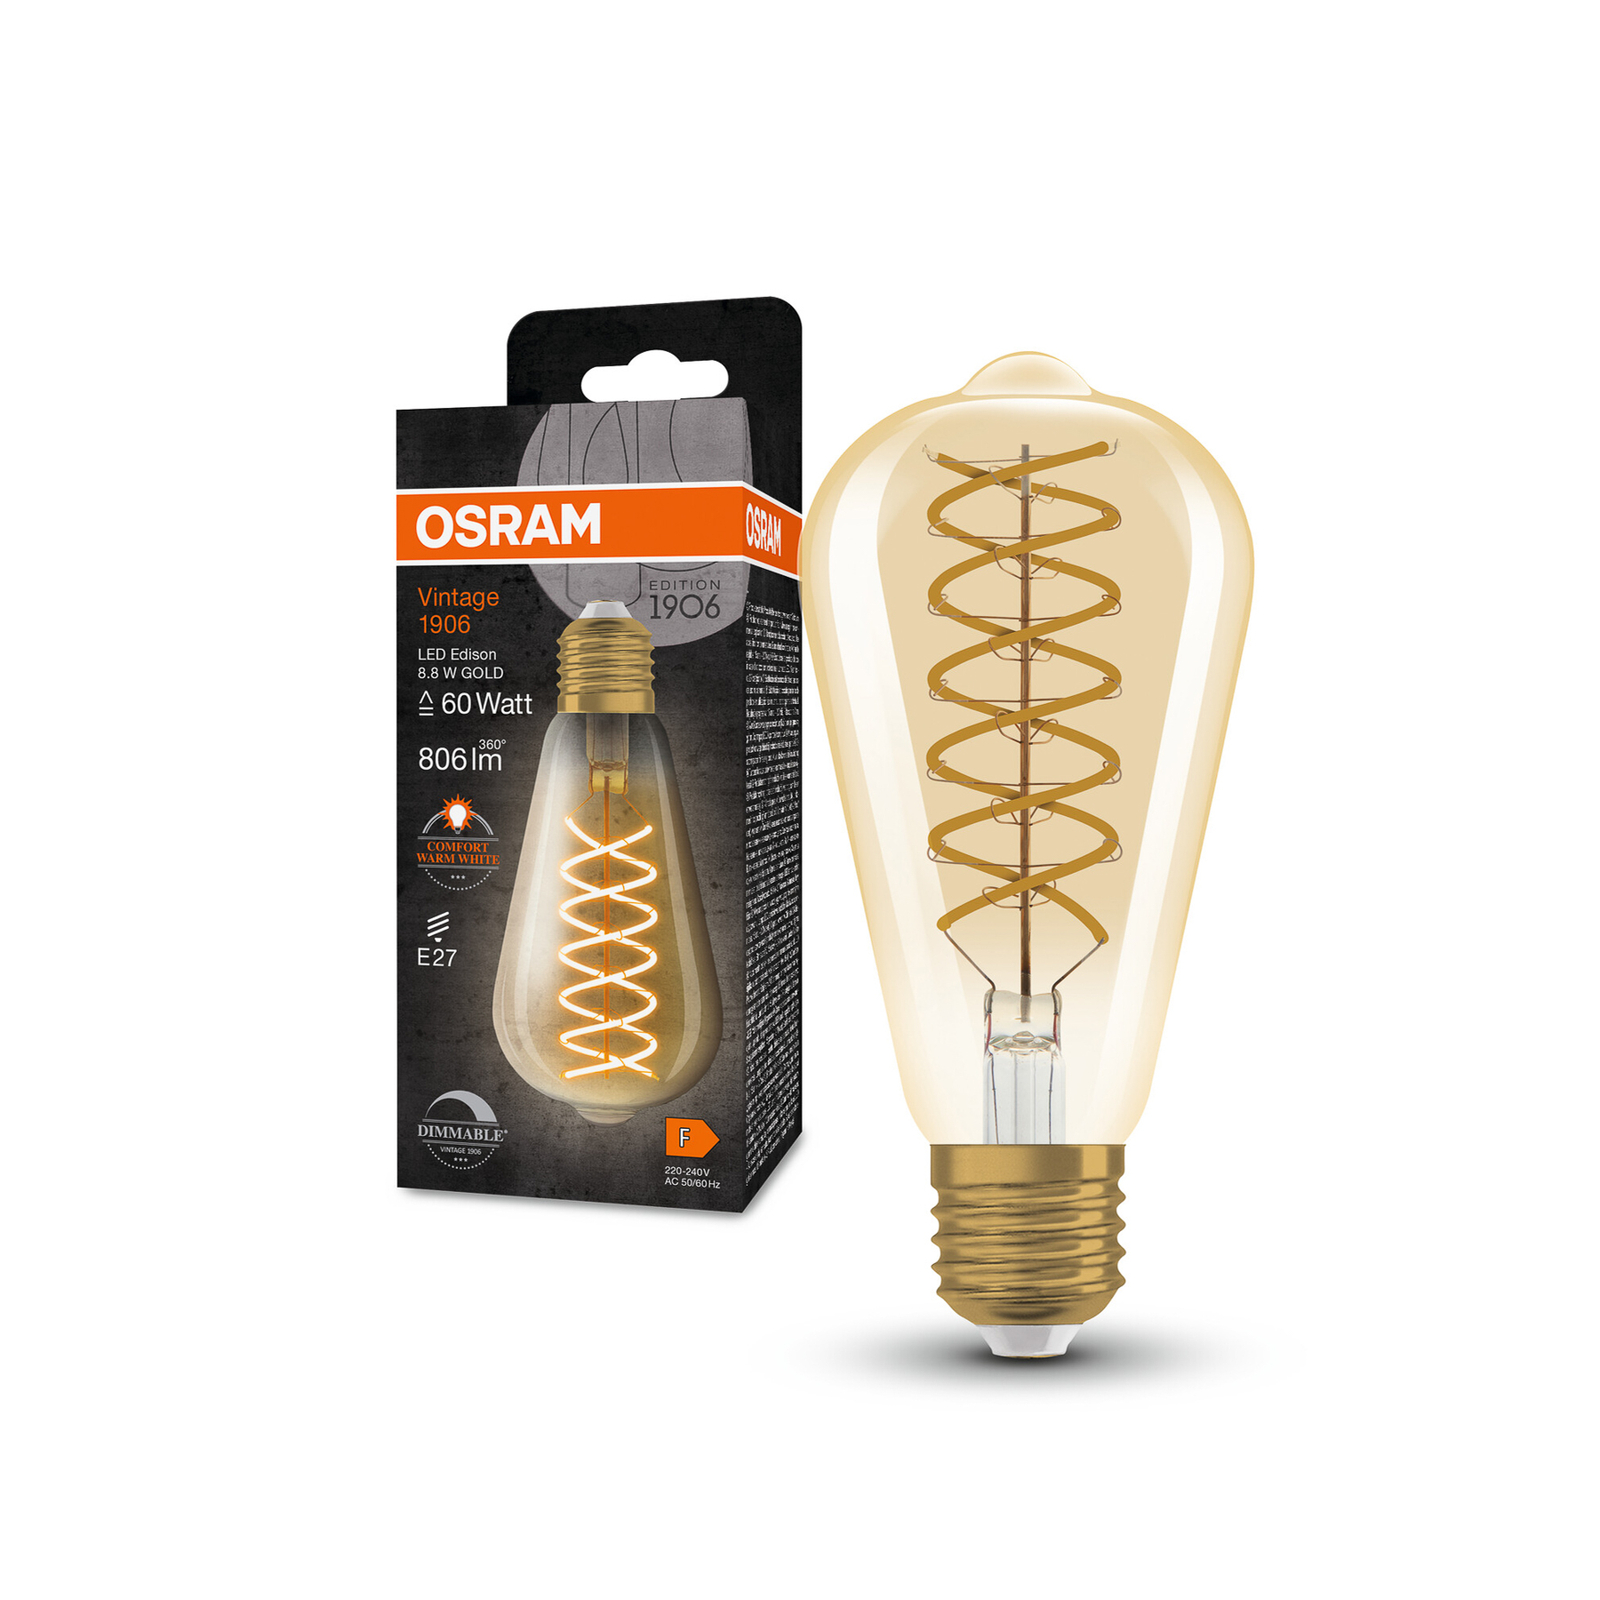 OSRAM LED Vintage 1906 Edison, zelta krāsā, E27, 8,8 W, 824, apt.